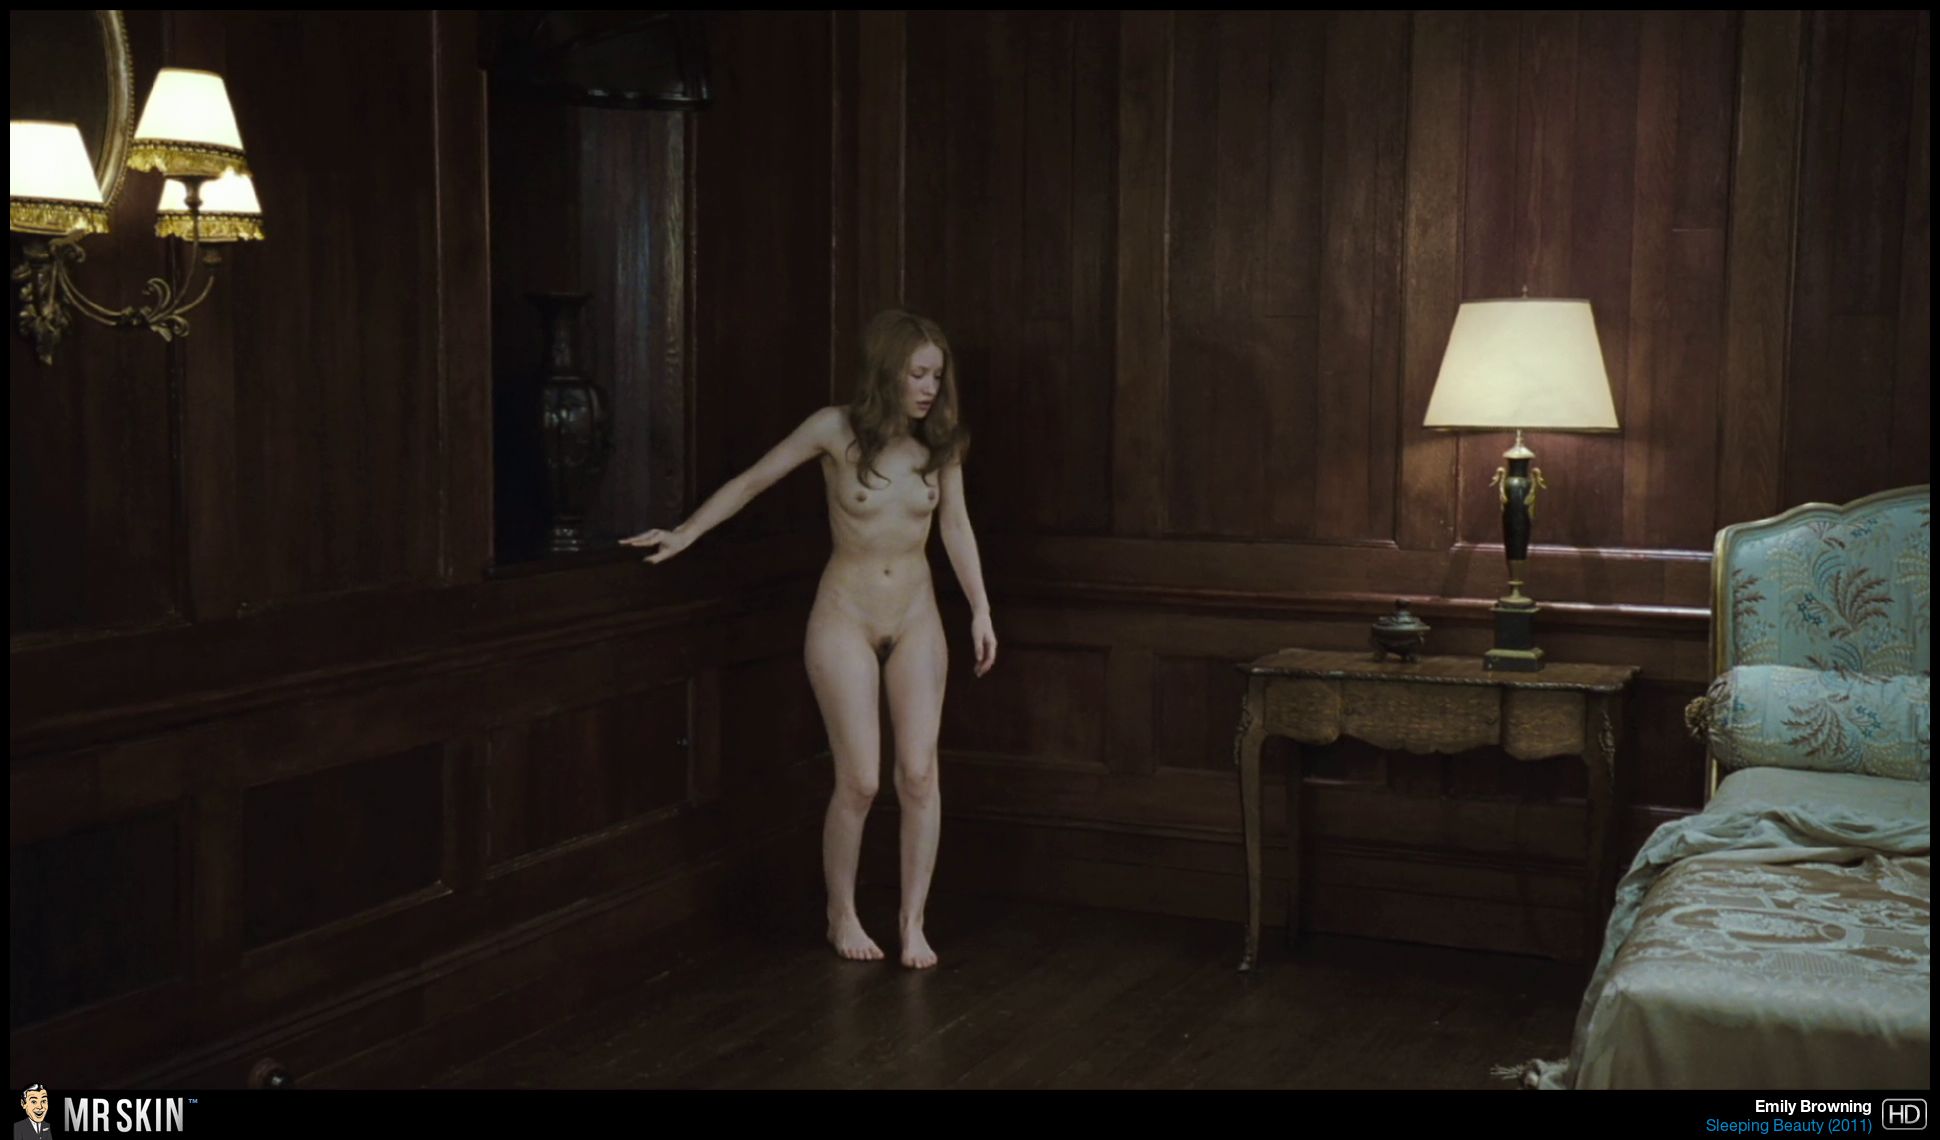 Full Frontal Nudity In Film